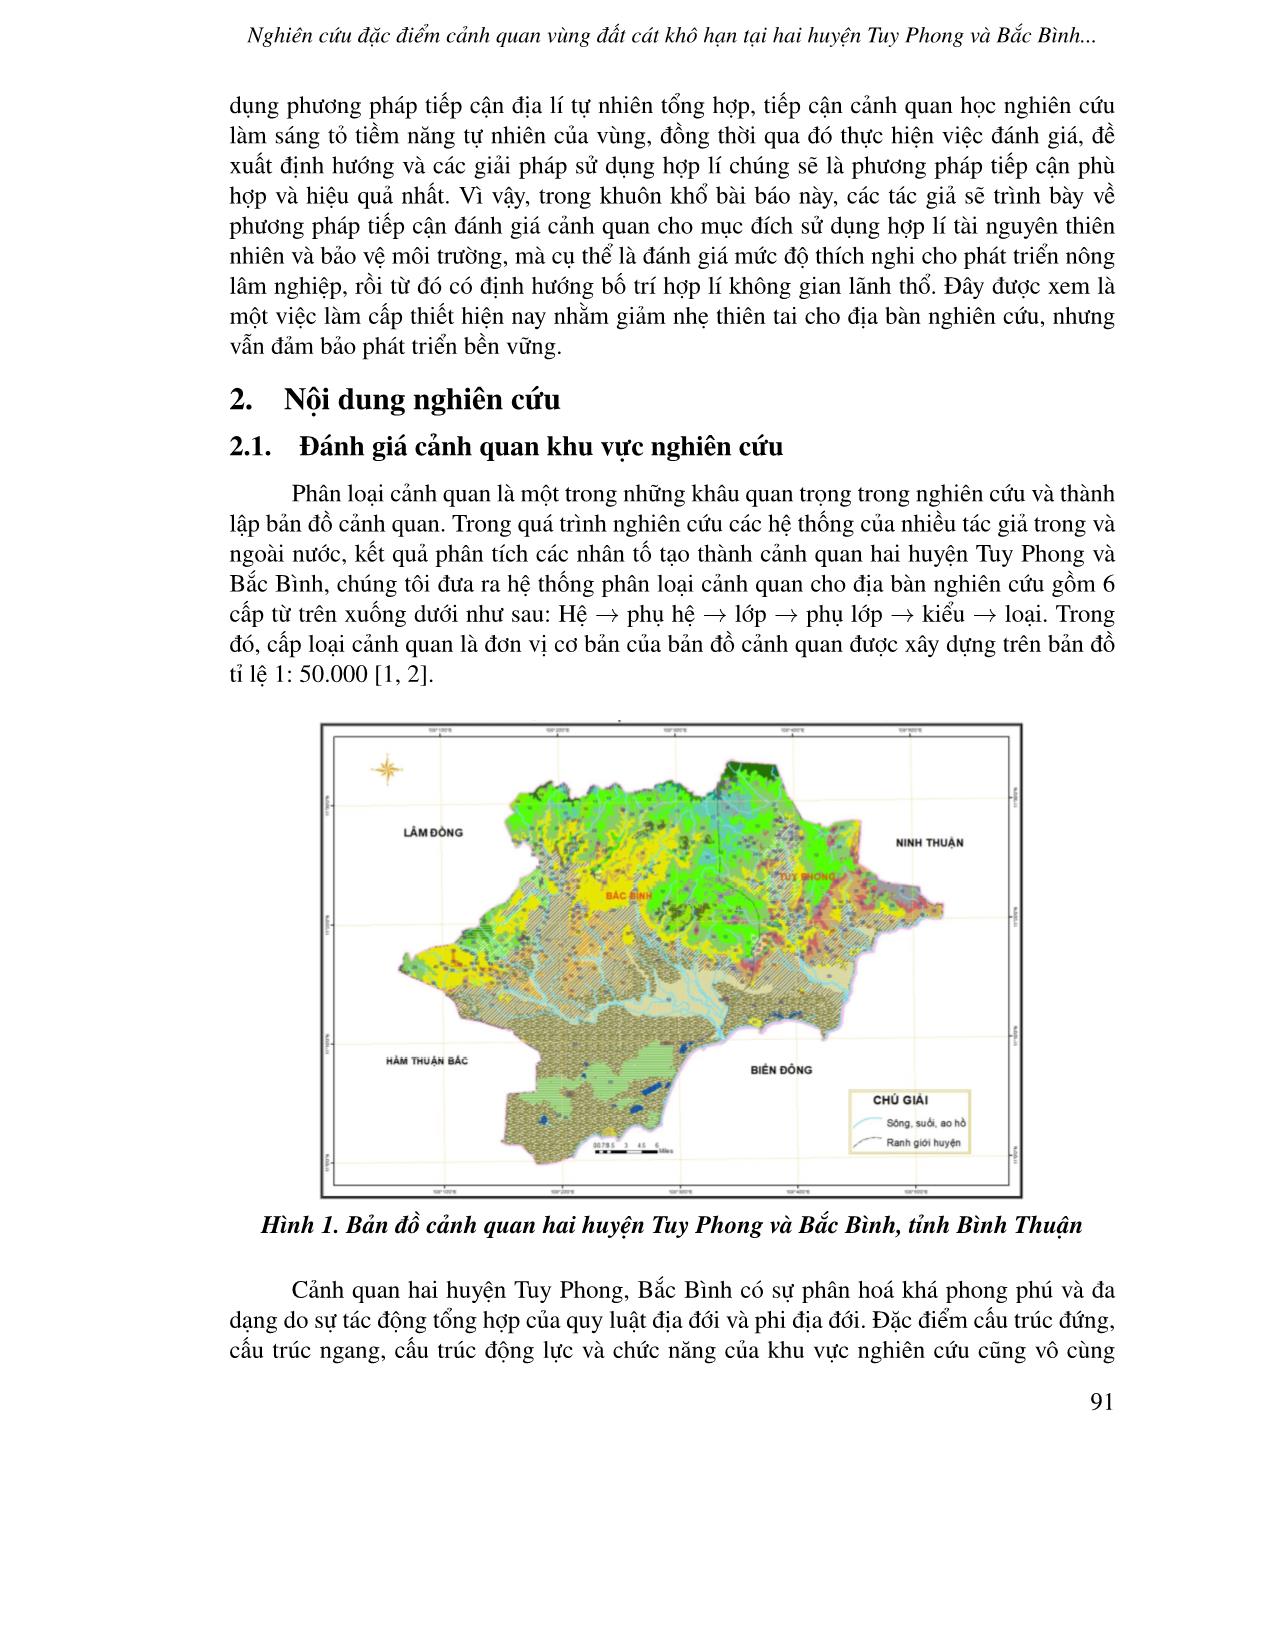 Nghiên cứu đặc điểm cảnh quan vùng đất cát khô hạn tại hai huyện Tuy Phong và Bắc Bình tỉnh Bình Thuận nhằm phục vụ sử dụng đất bền vững trang 2